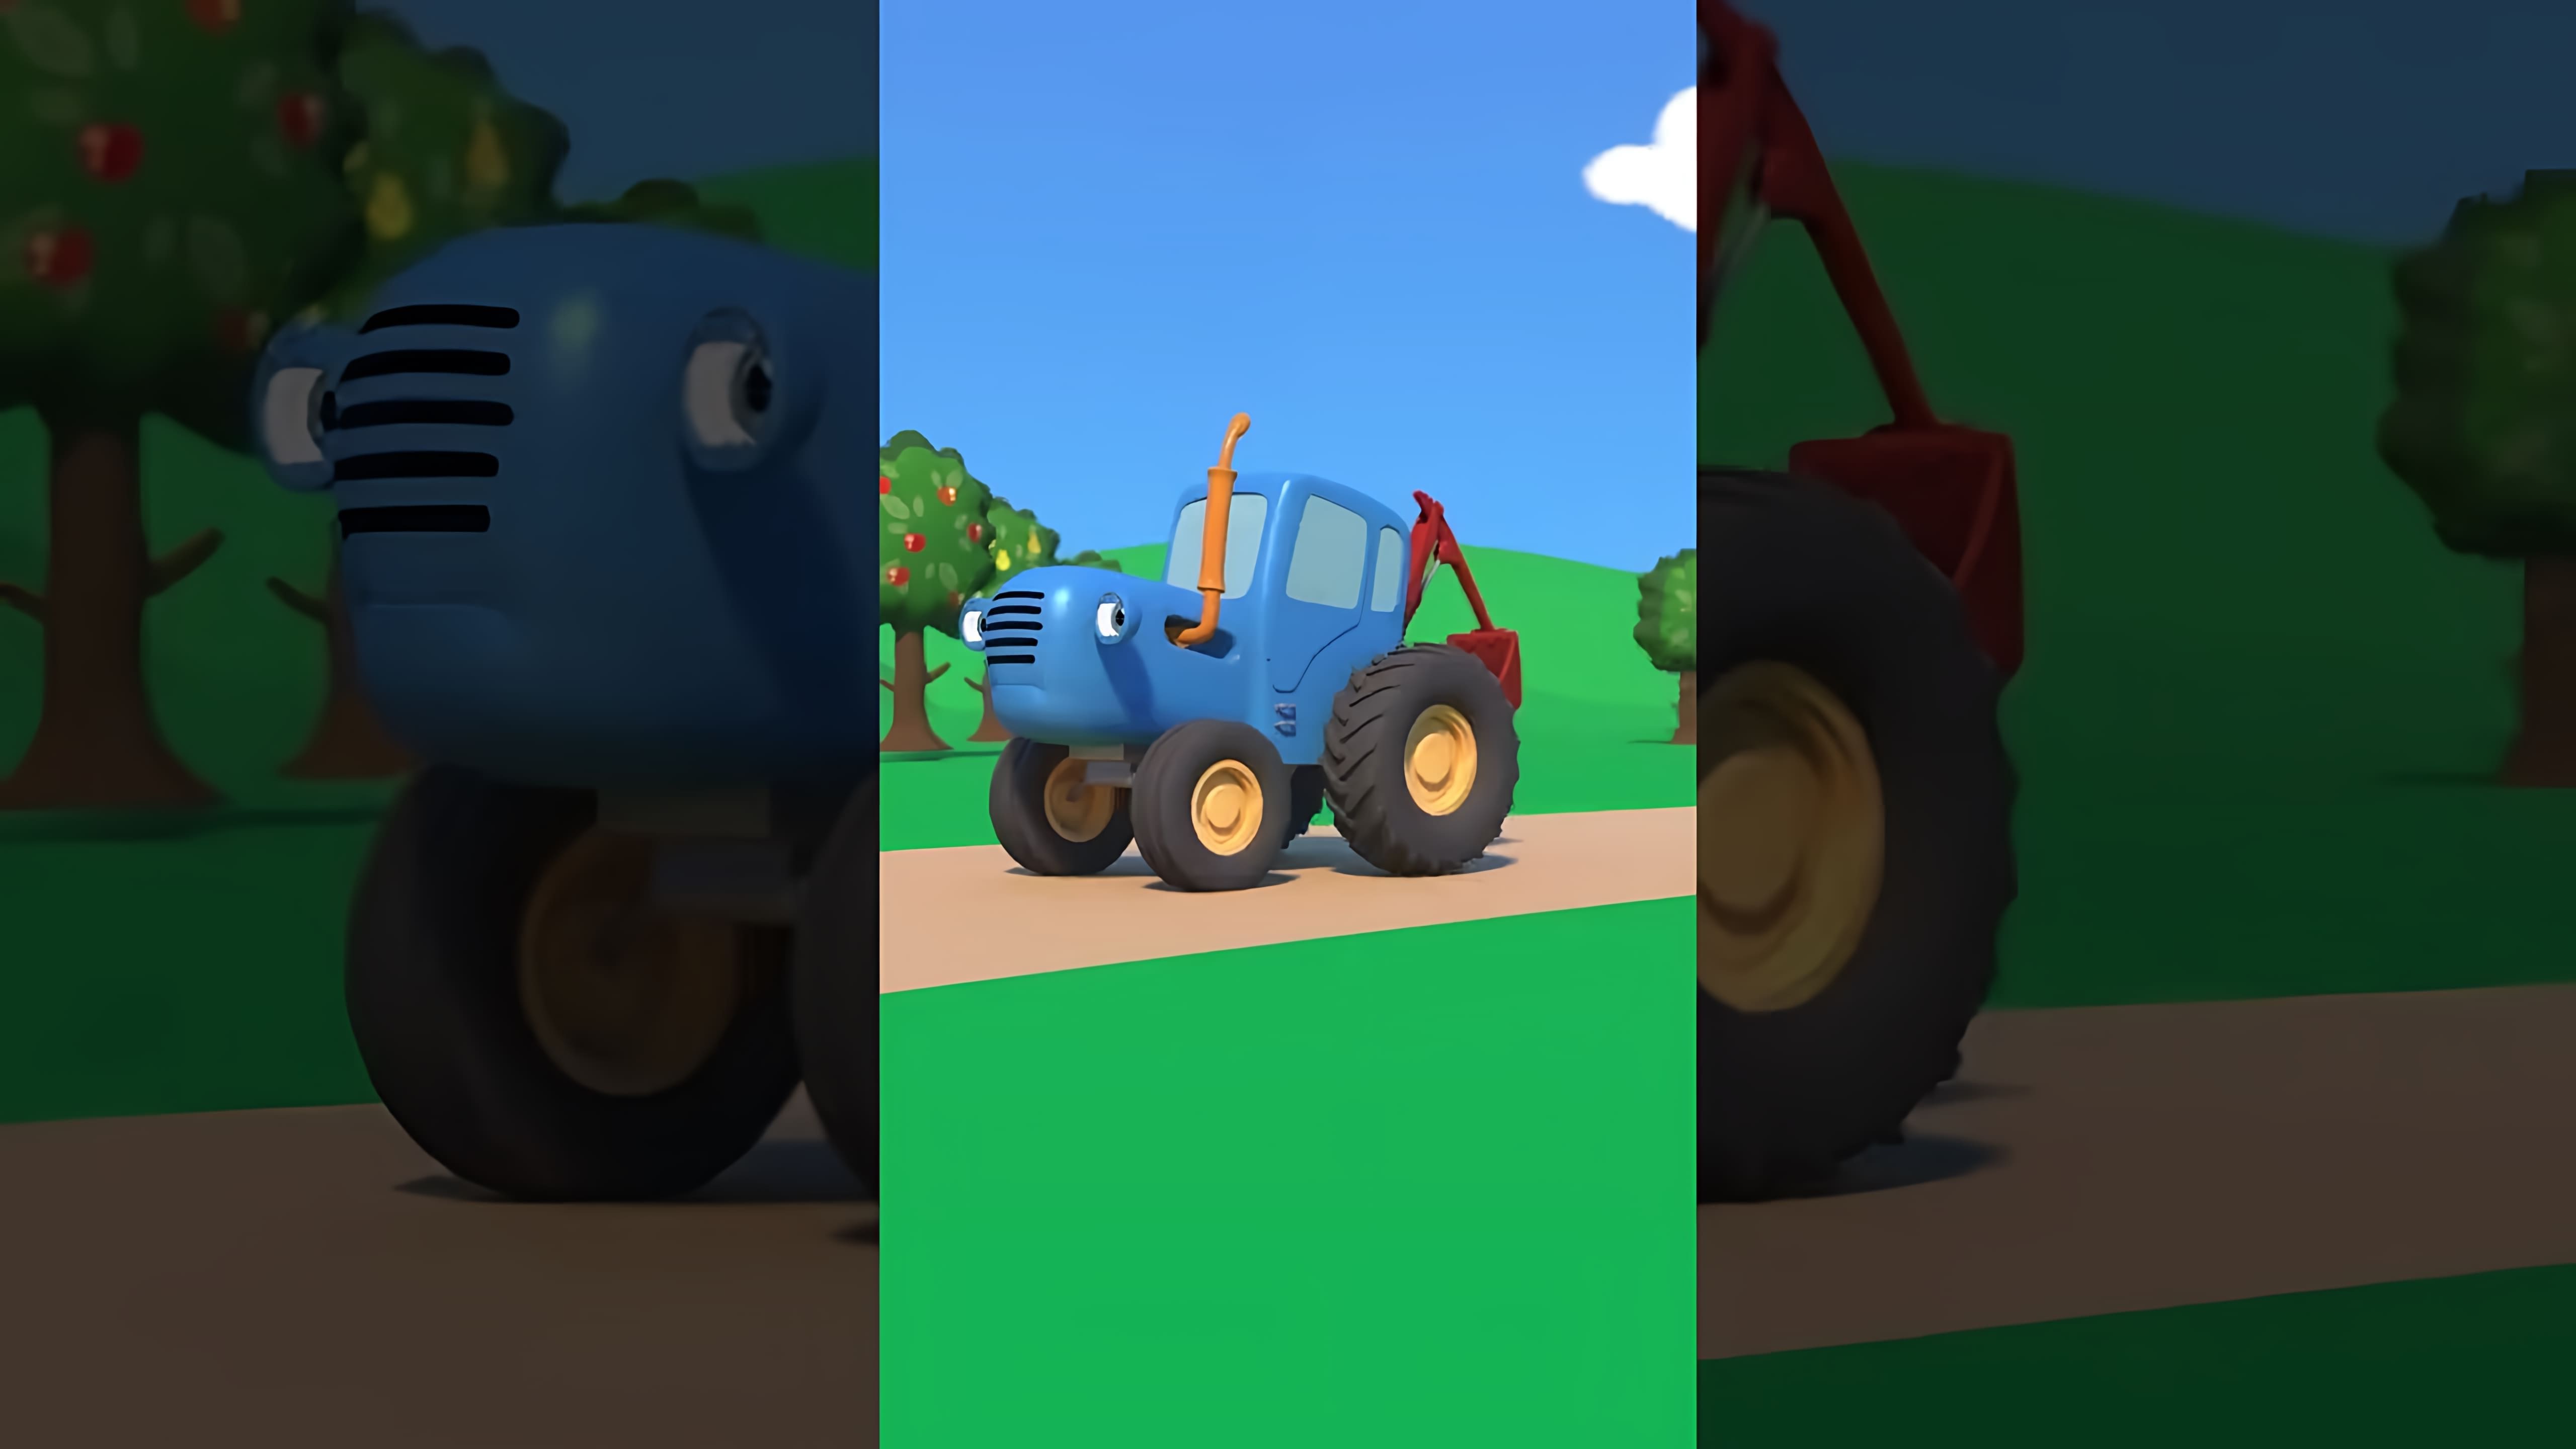 В видео-ролике "По полям по полям Синий трактор едет к нам shorts" мы видим, как синий трактор проезжает по полям, собирая урожай